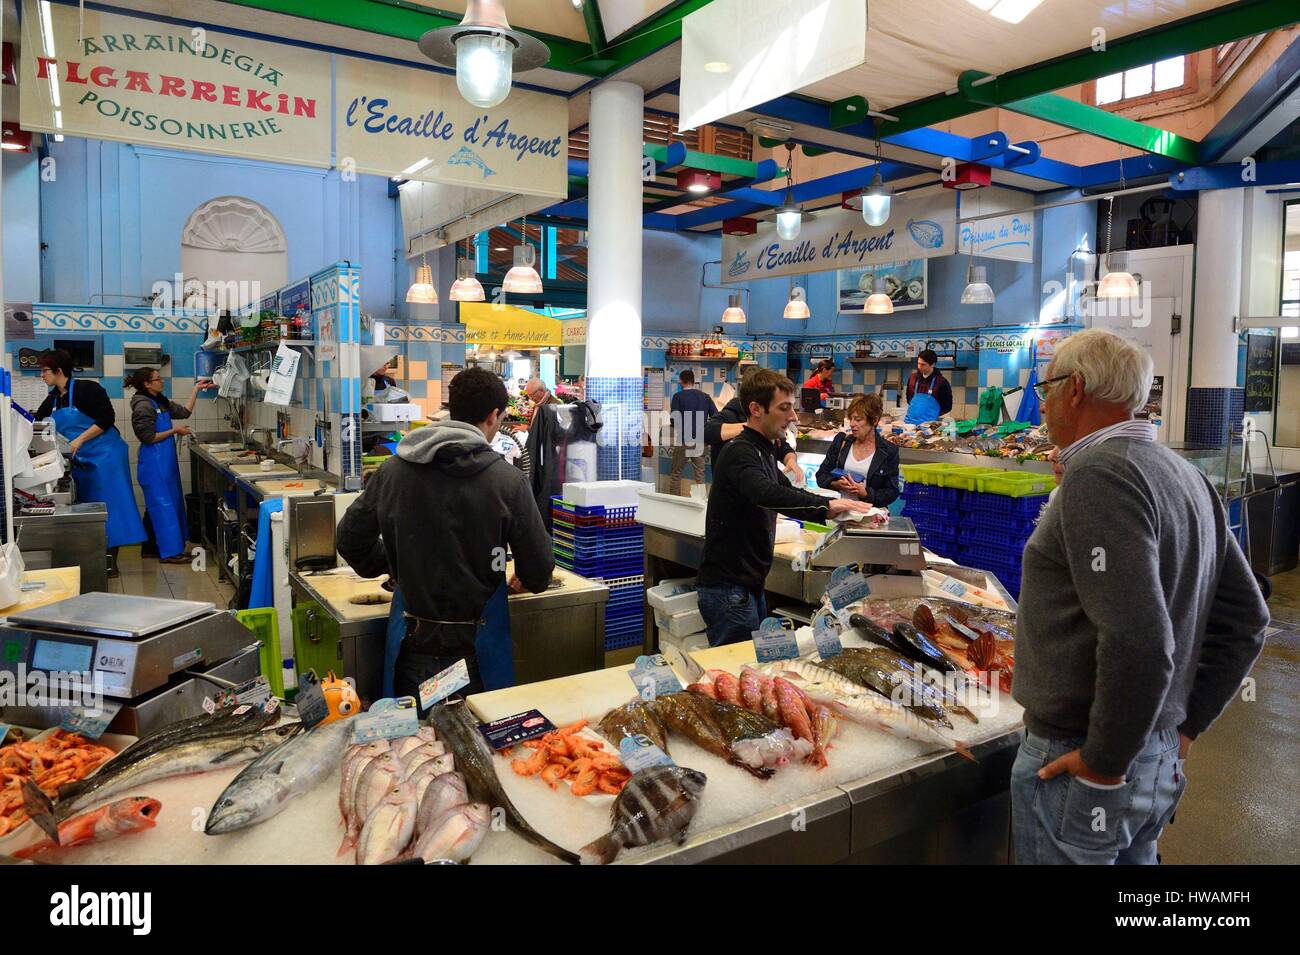 France, Pyrenees Atlantiques, Saint Jean de Luz, fish market Stock Photo -  Alamy